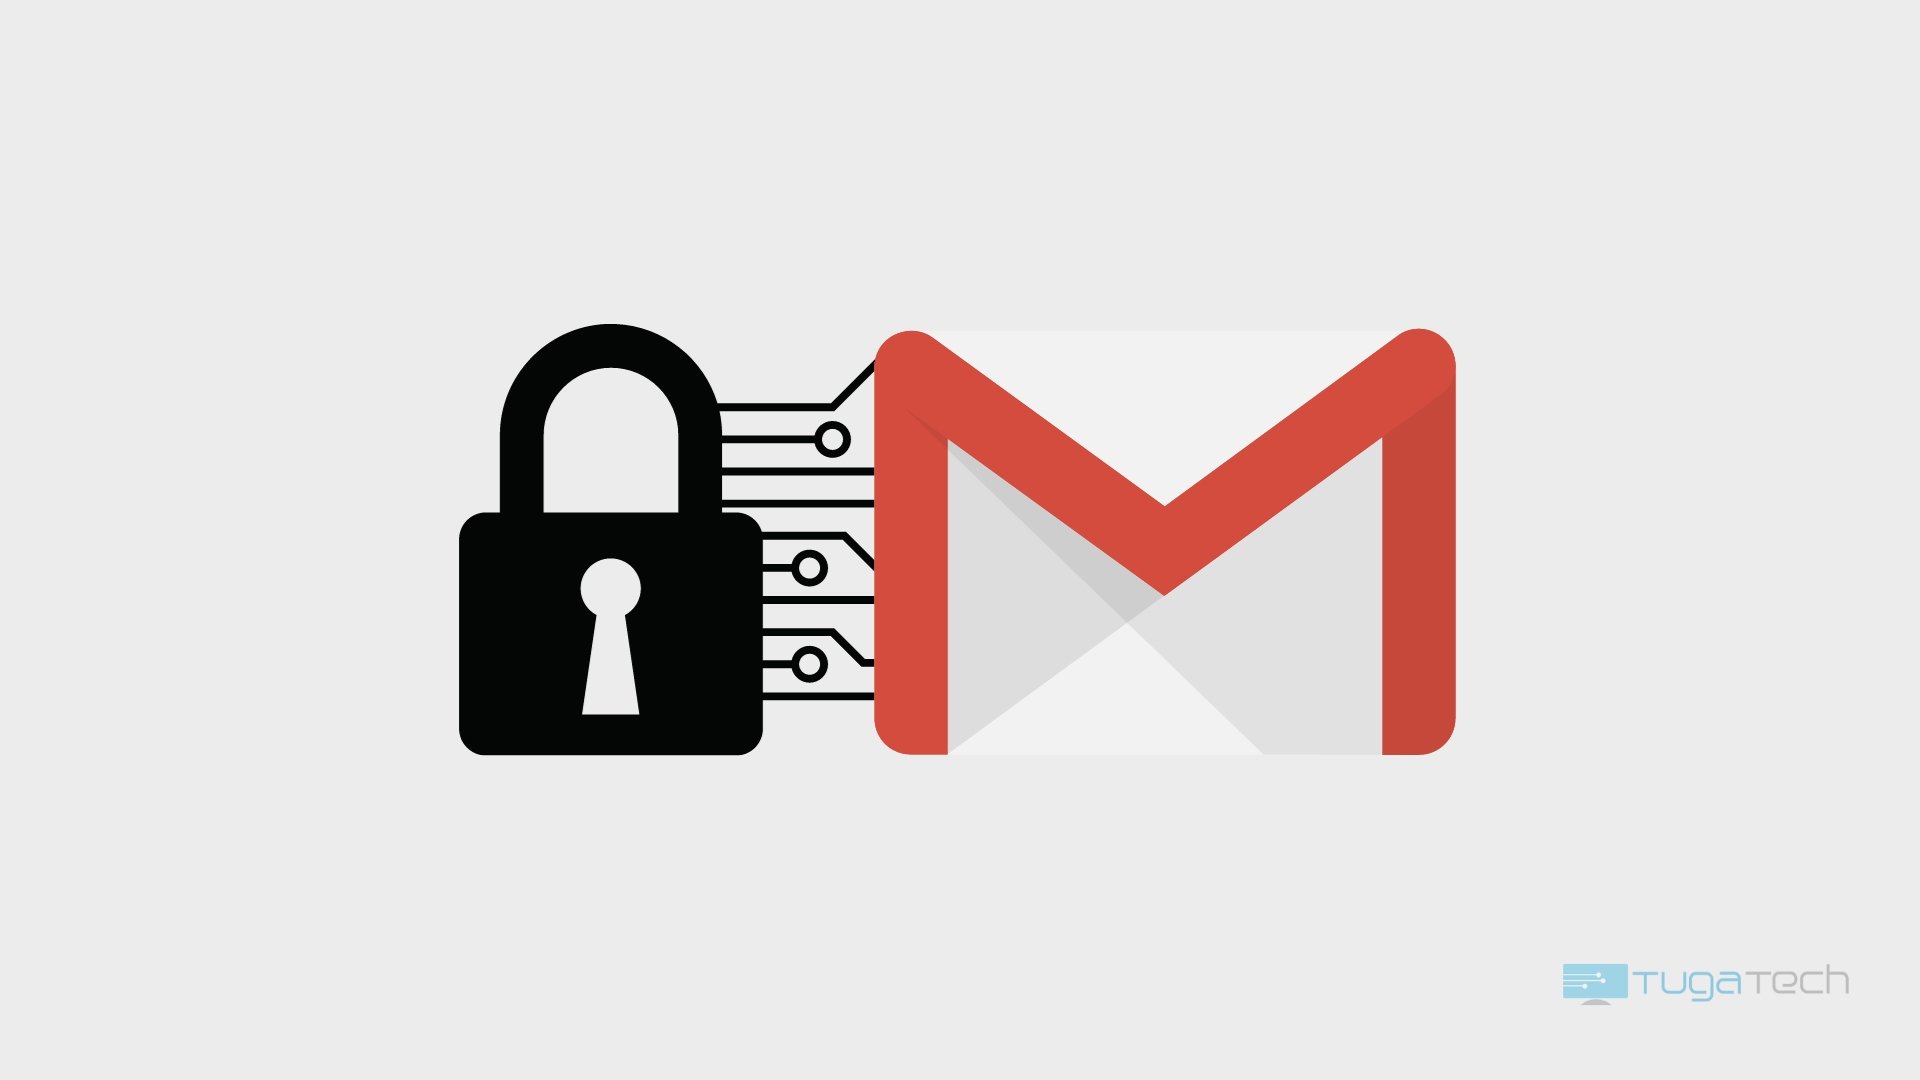 Gmail agora suporta encriptação de mensagens no Android e iOS